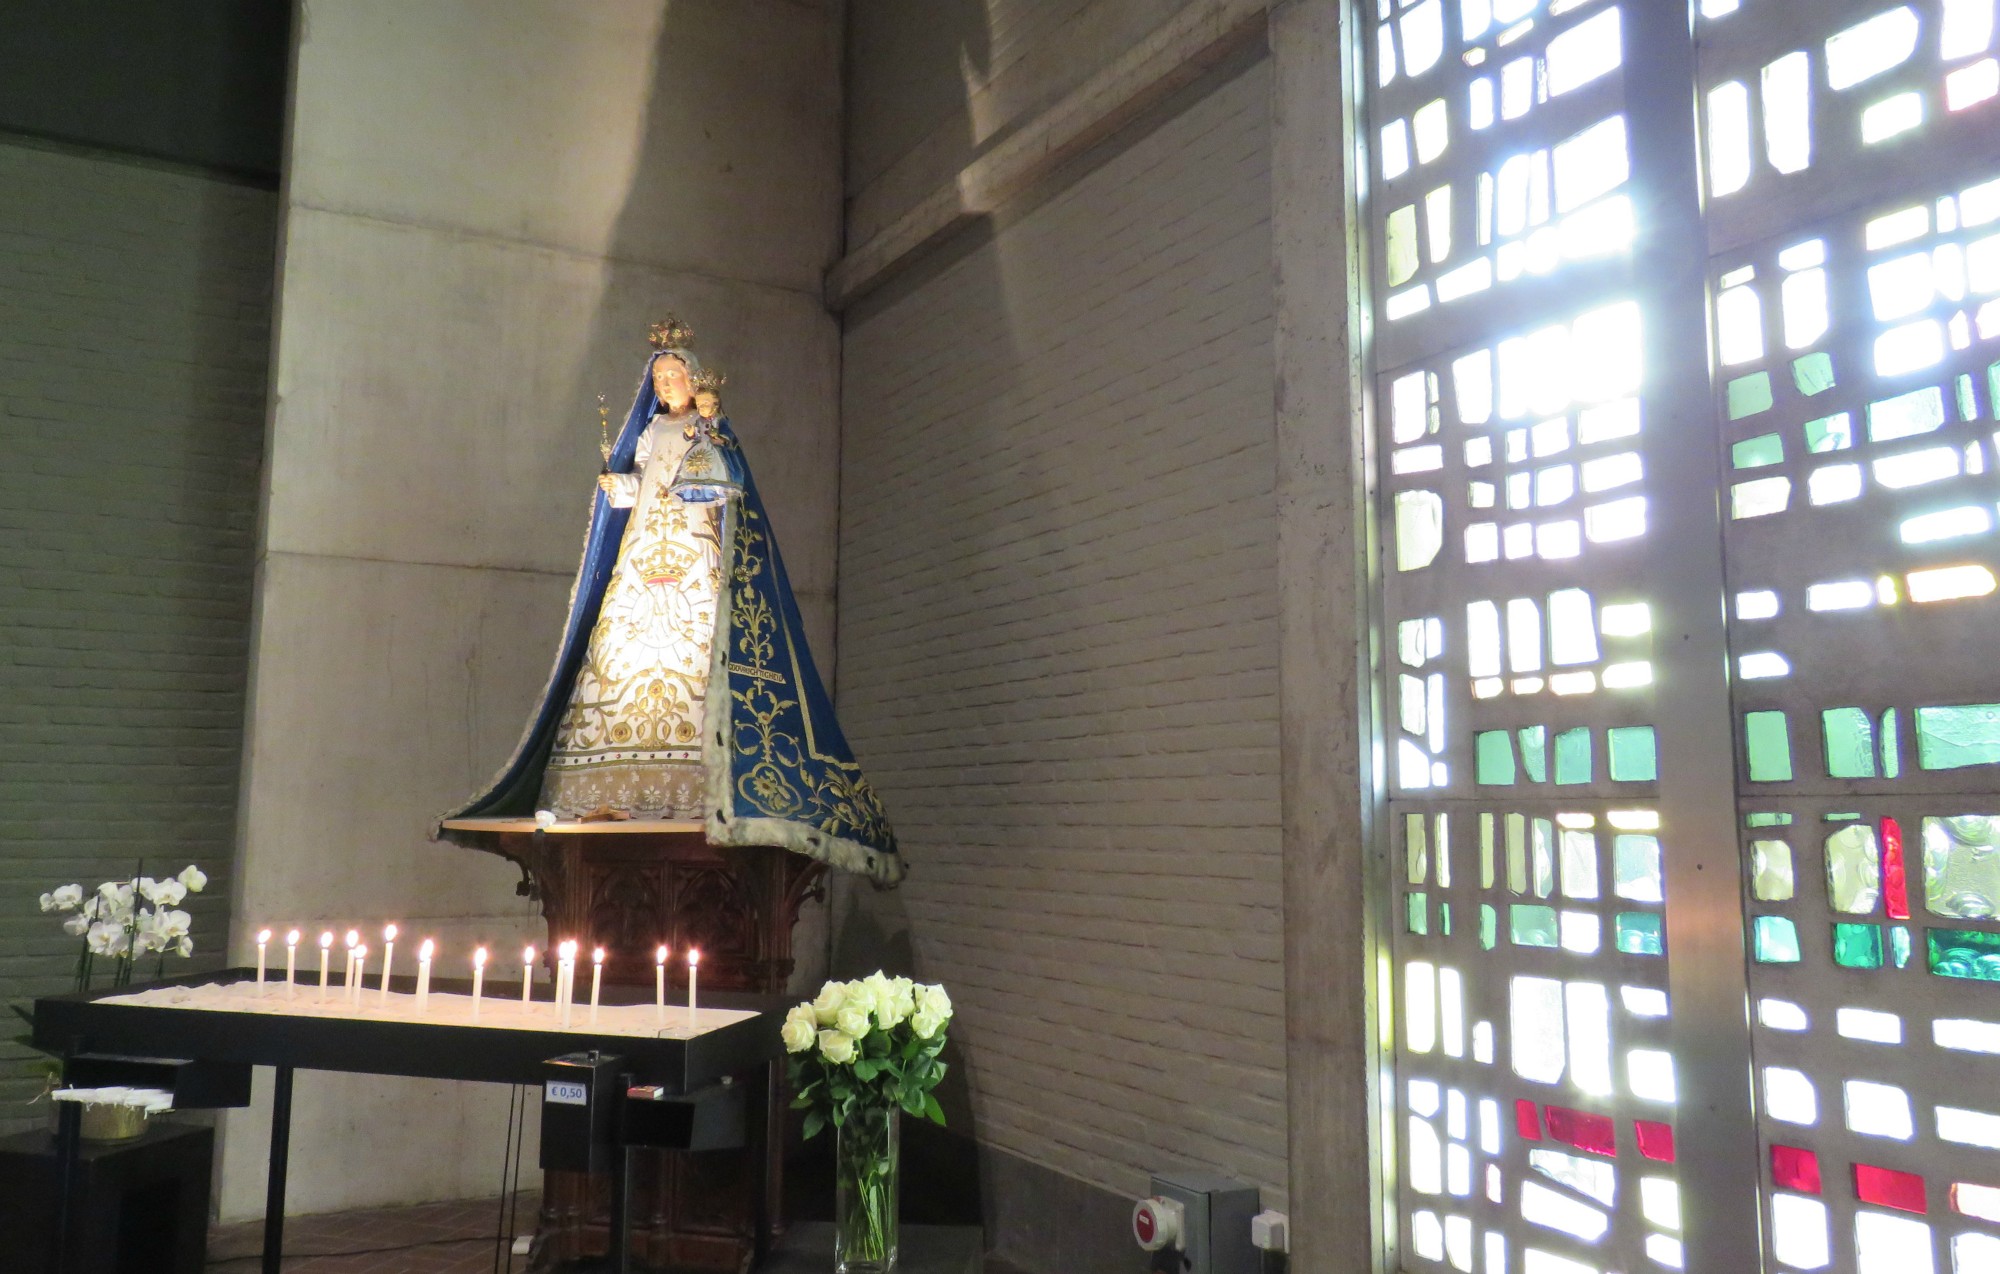 De glasramen met het Mariabeeld in de kerk